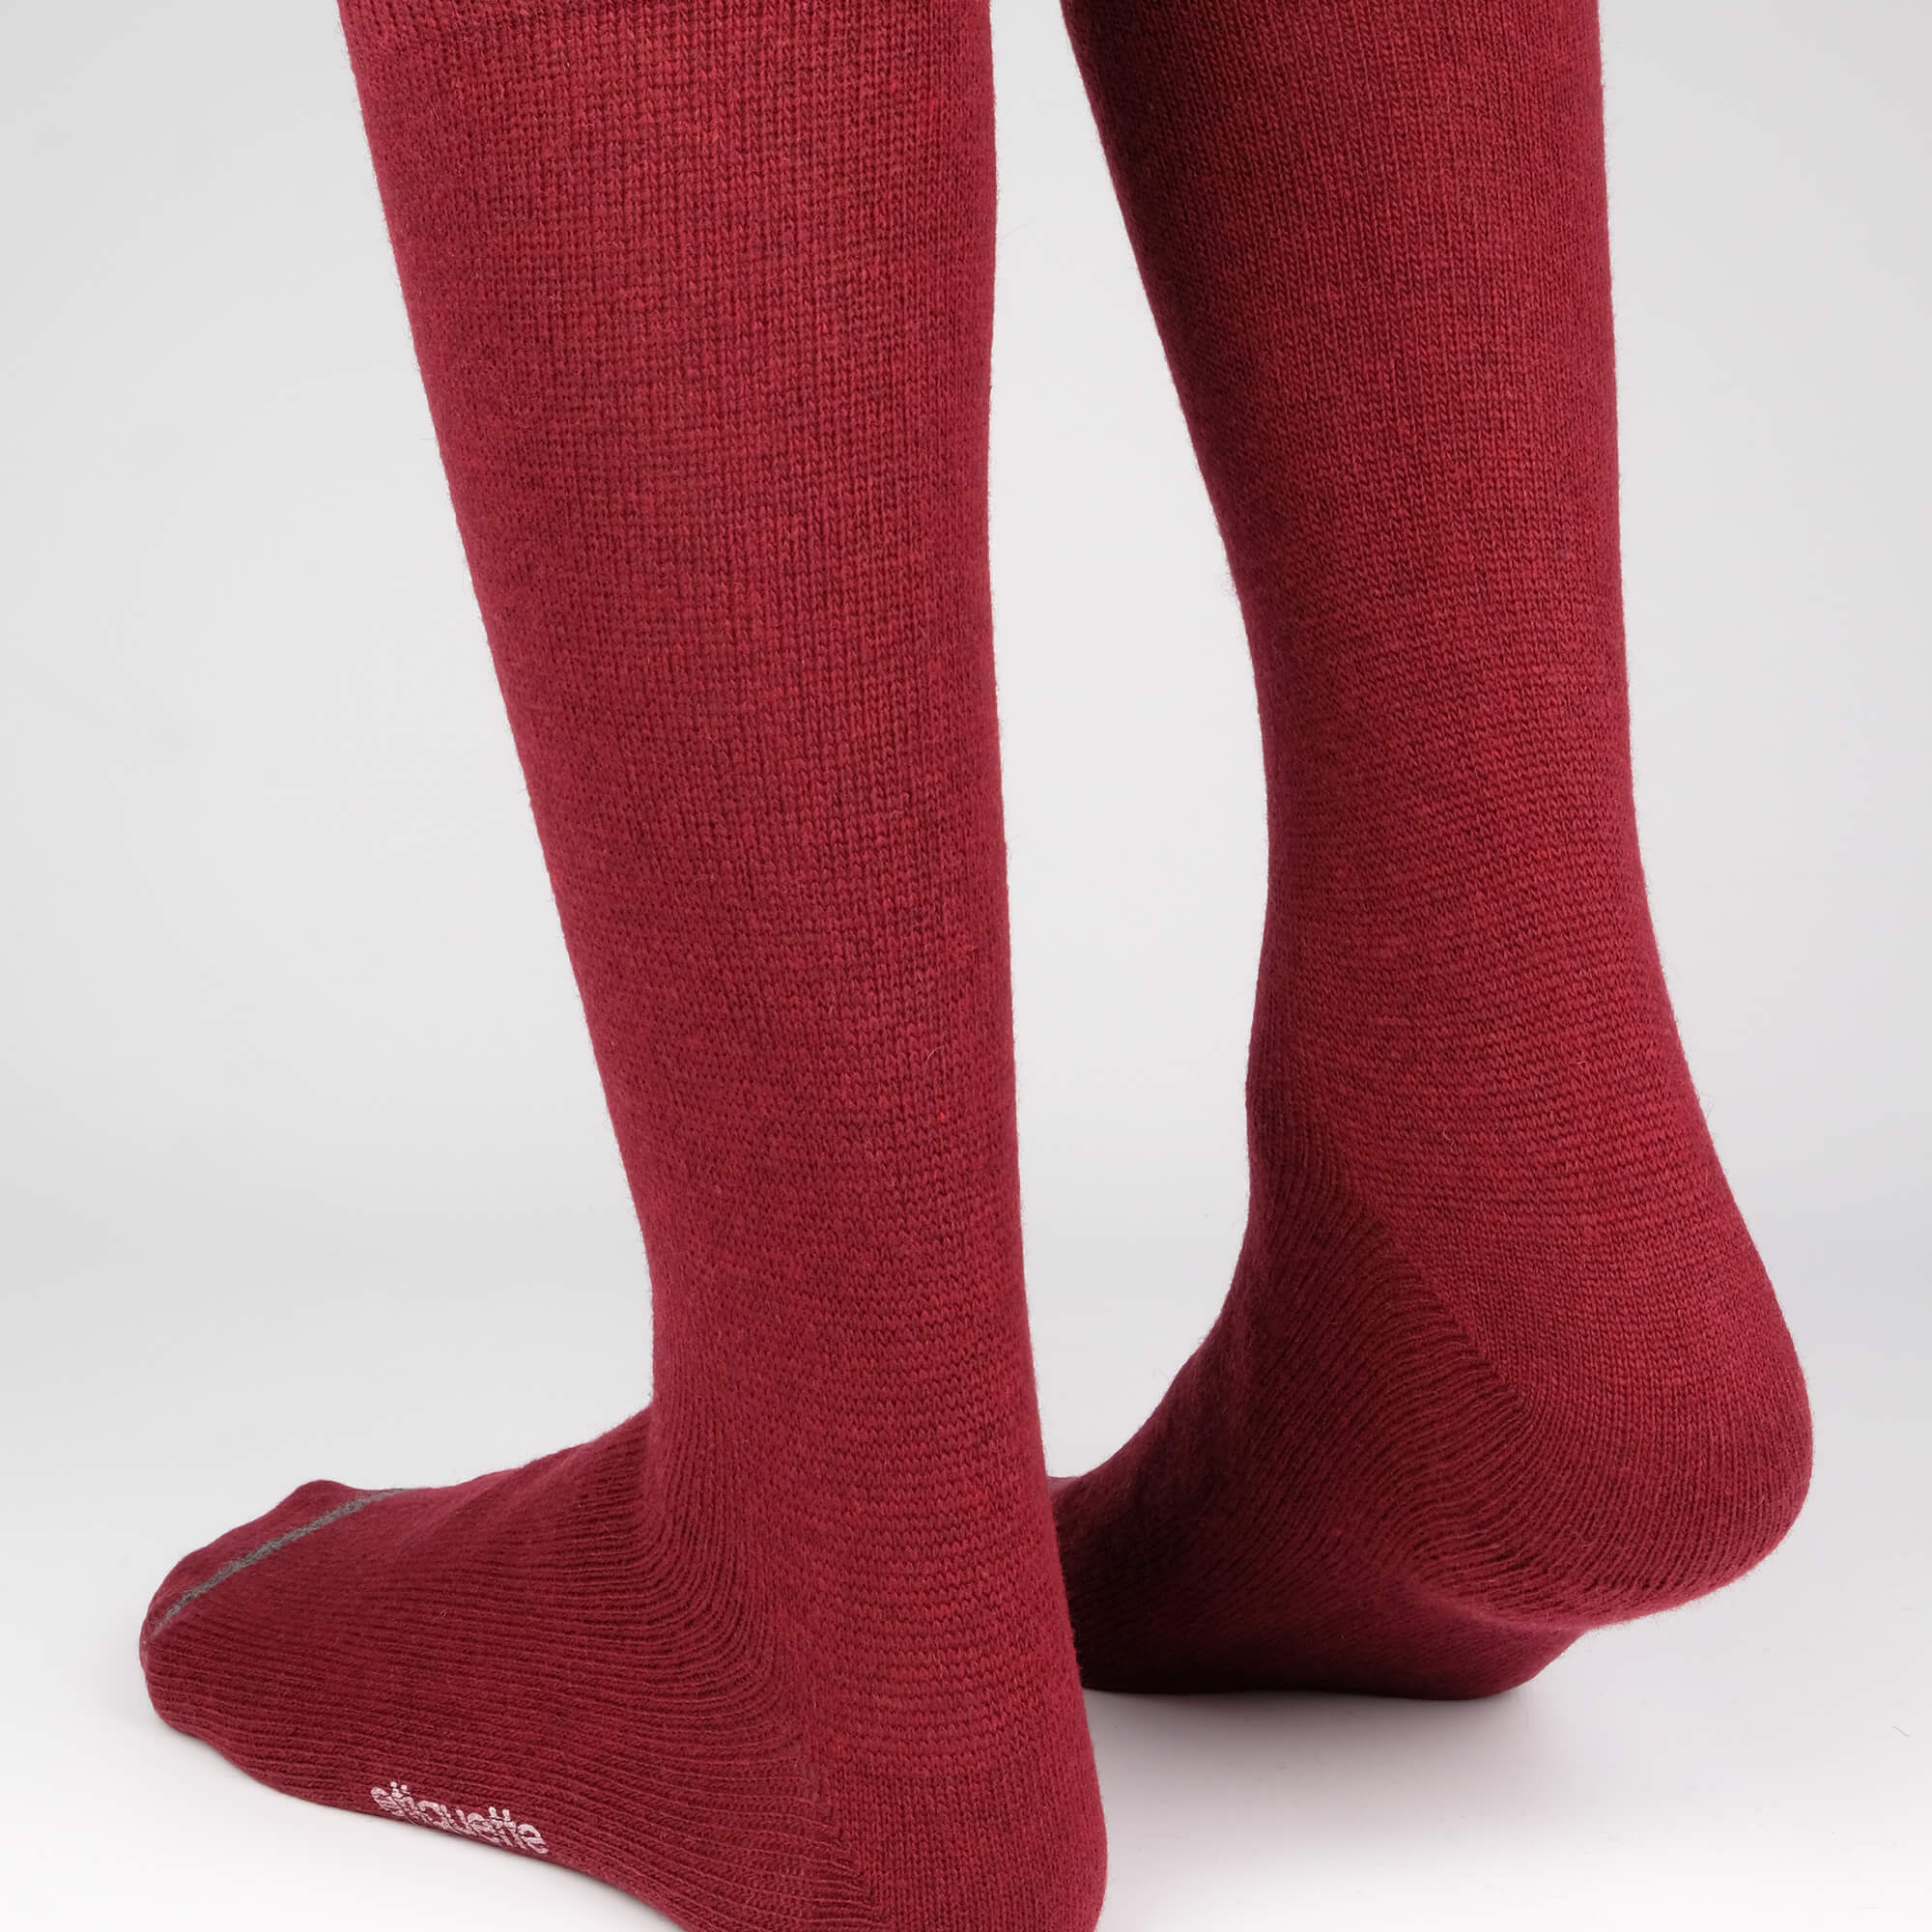 Mens Socks - Cashmere x Merino Men's Socks - Bordeaux⎪Etiquette Clothiers